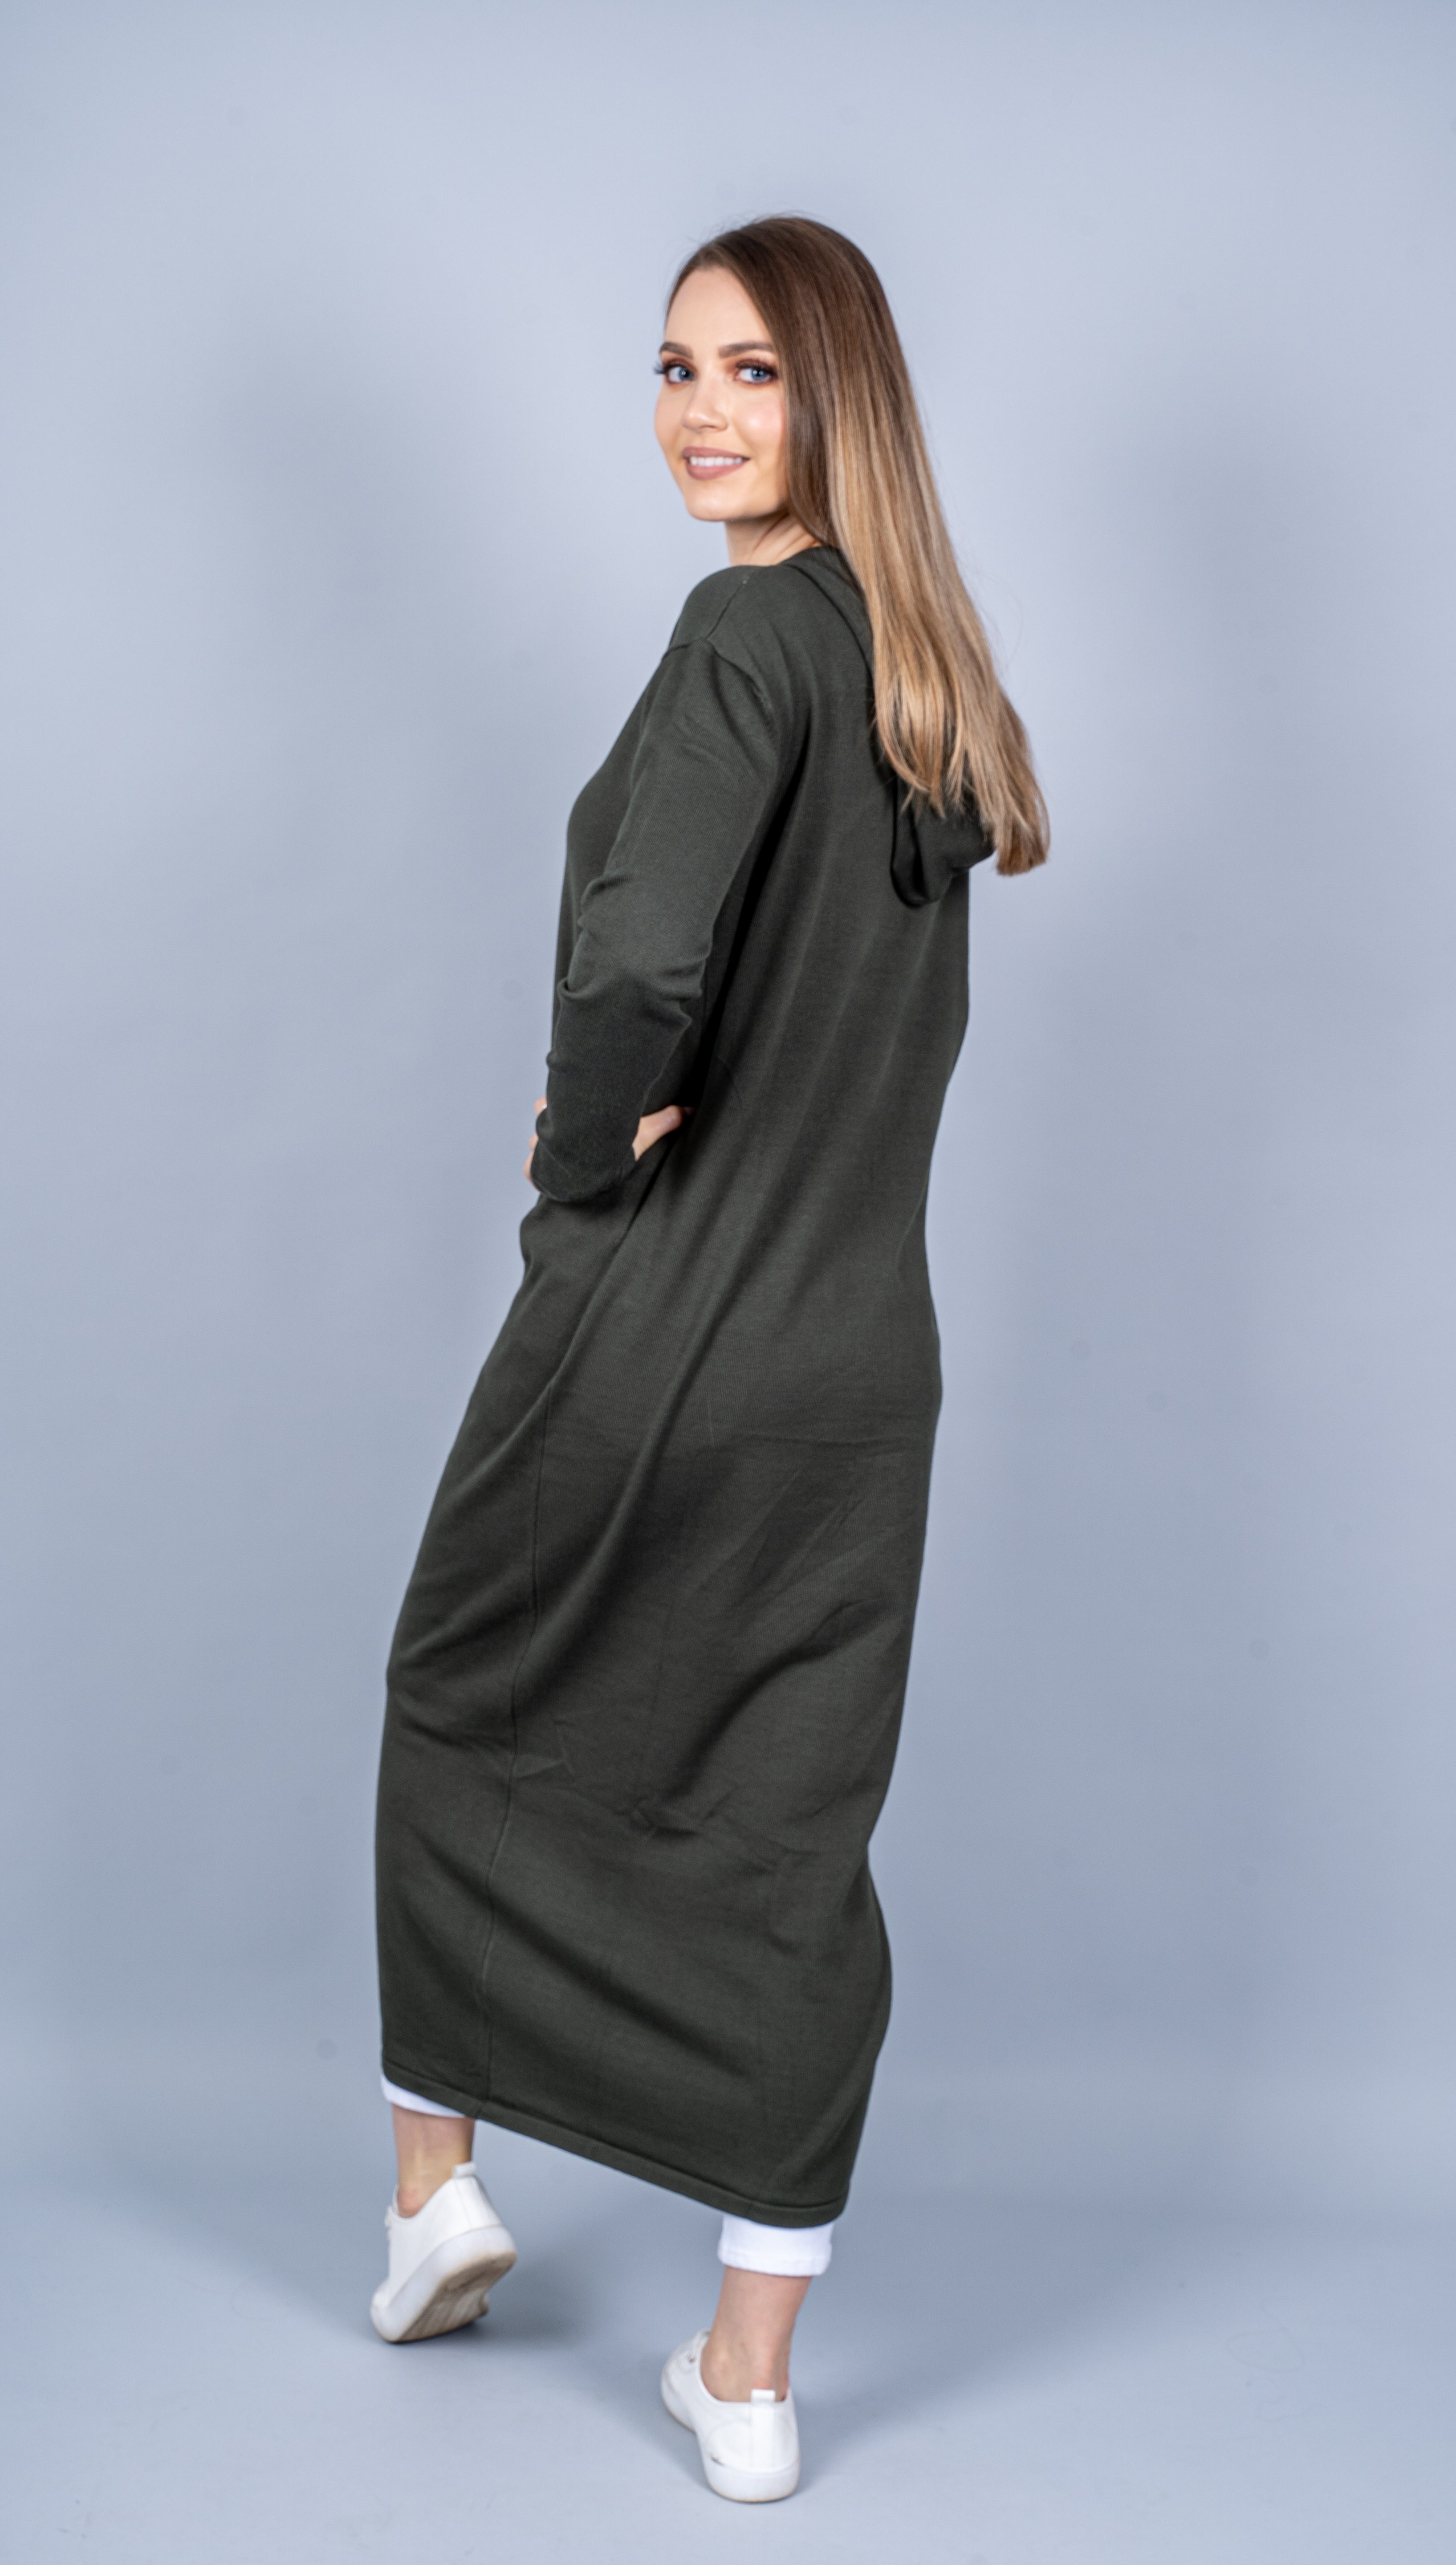 7559-Khaki-knit-dress-abaya